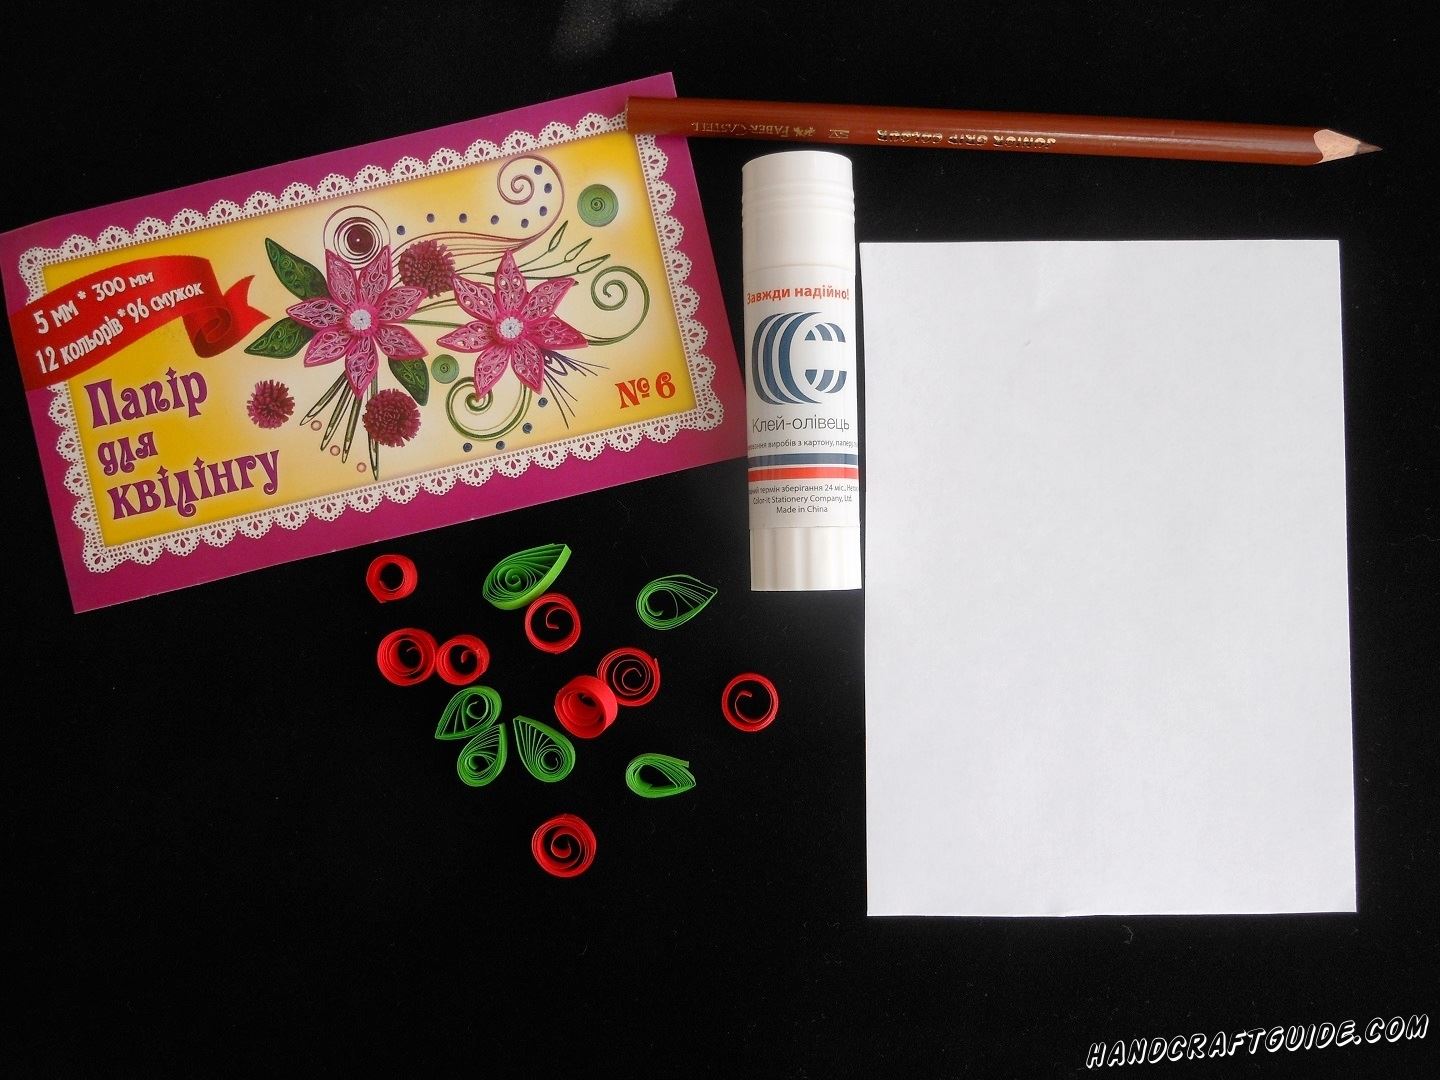 Берем бумагу для квиллинга и скручиваем листики зелёного цвета и красные круглые ягодки. Откладываем их в сторону